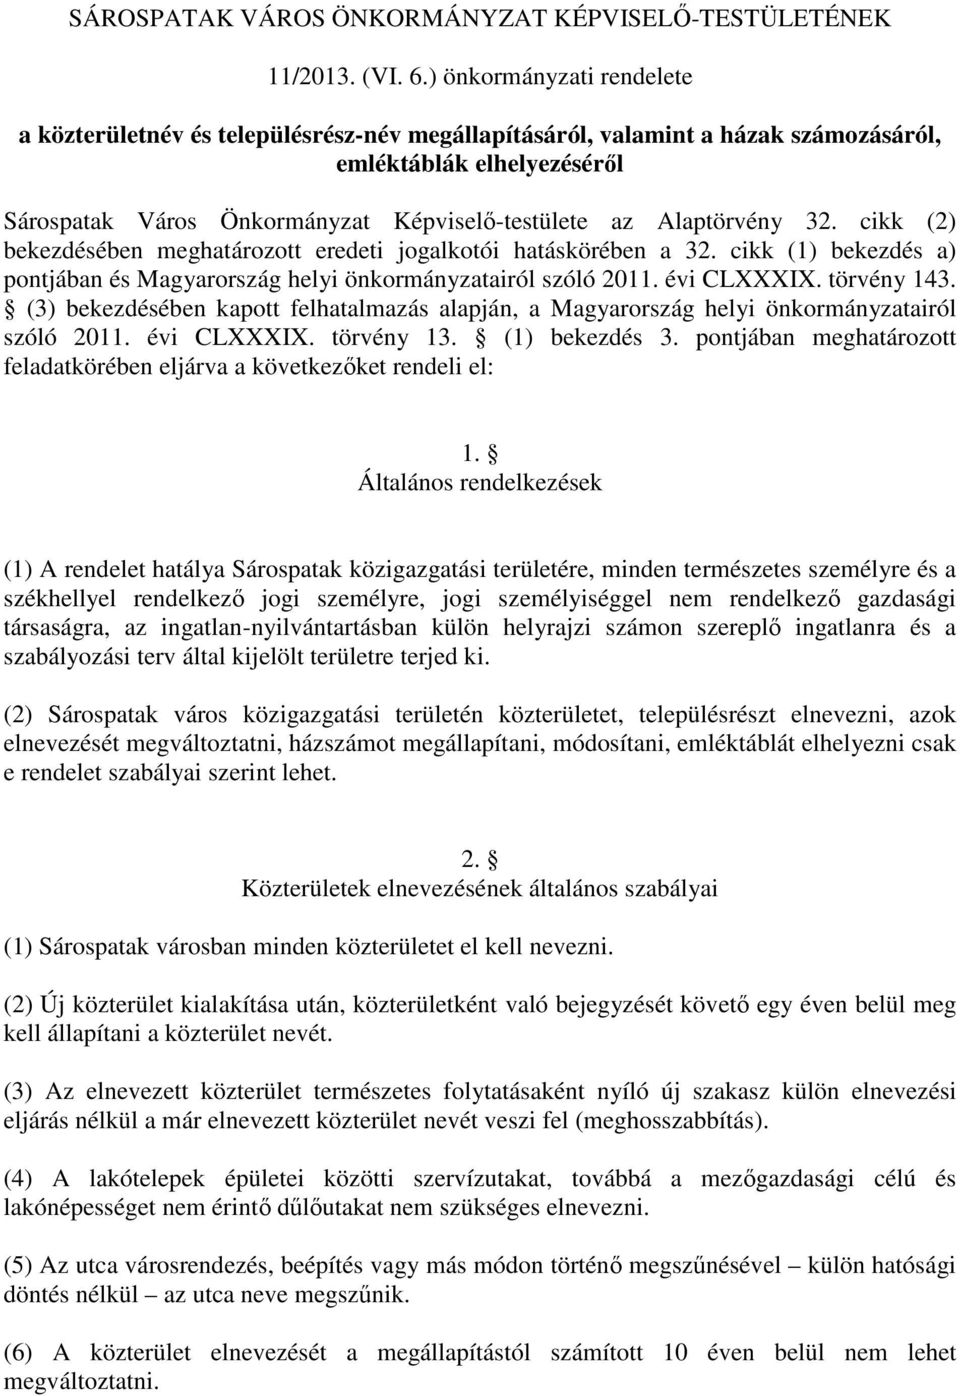 Alaptörvény 32. cikk (2) bekezdésében meghatározott eredeti jogalkotói hatáskörében a 32. cikk (1) bekezdés a) pontjában és Magyarország helyi önkormányzatairól szóló 2011. évi CLXXXIX. törvény 143.